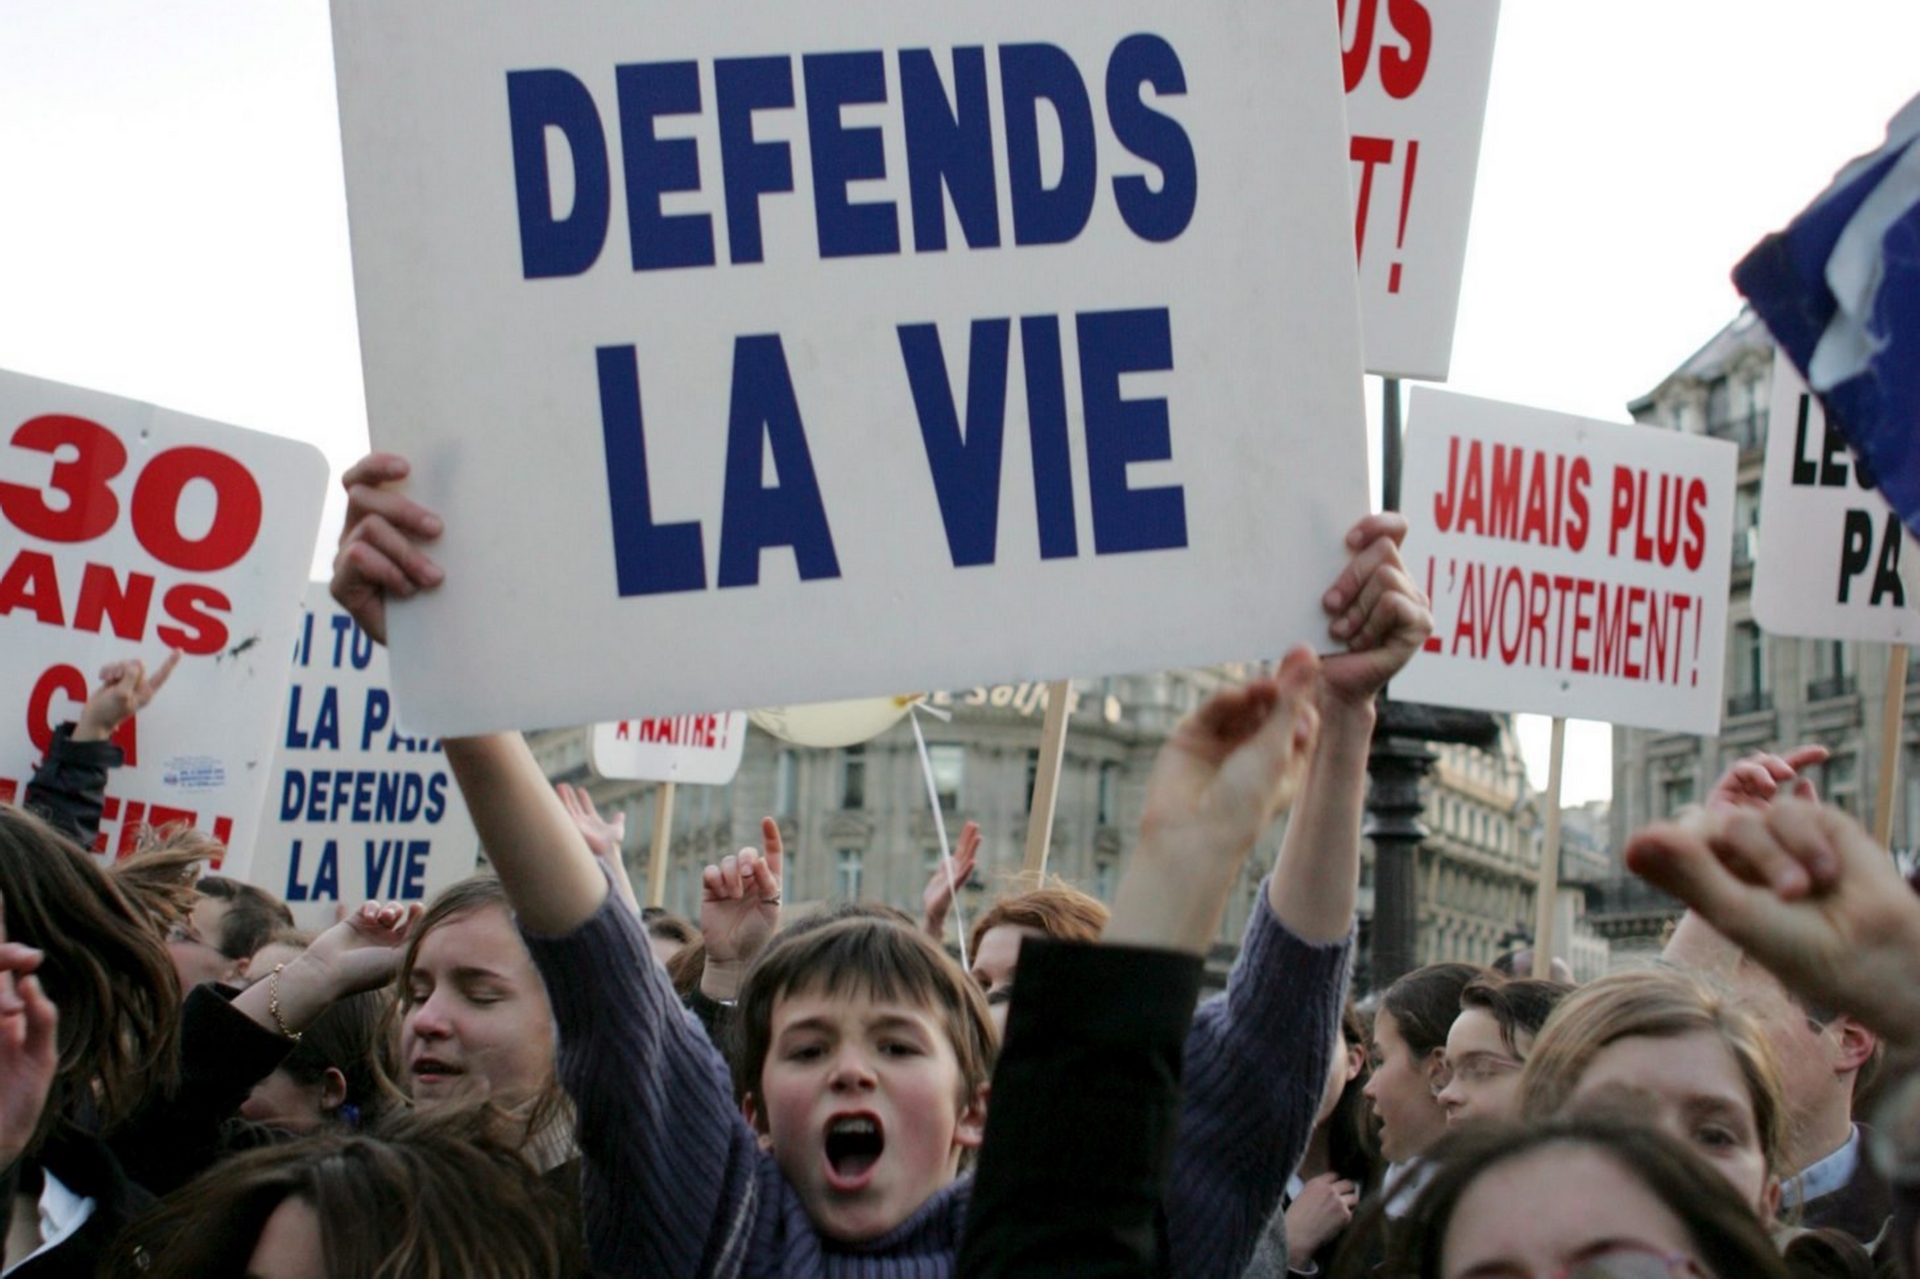 Siti web pro-vita presto fuorilegge? I vescovi scrivono a Hollande